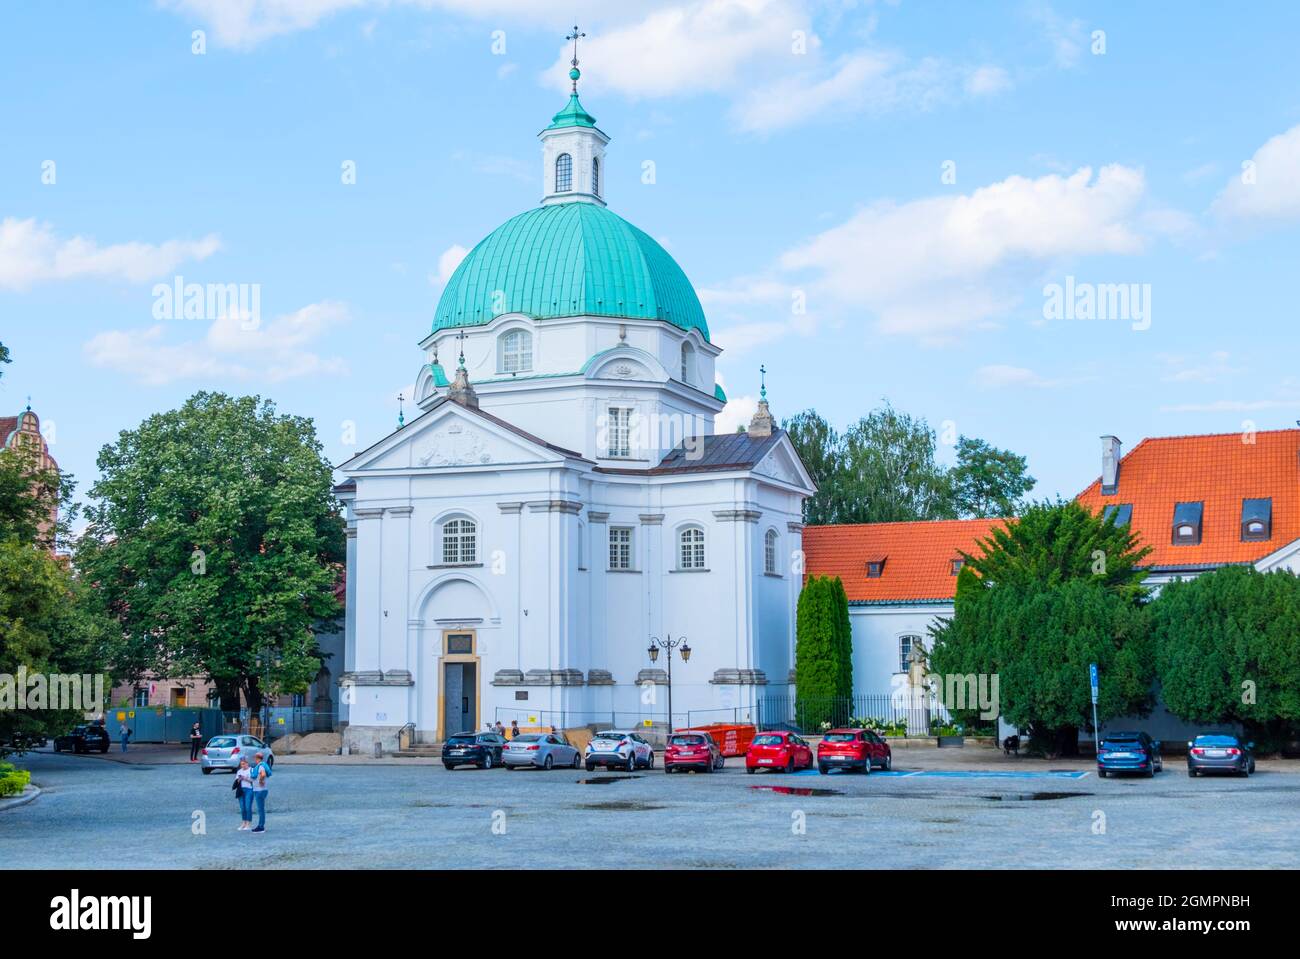 Roman Catholic Church Of St Casimir, Rynek Nowego Miasta, Nowe Miasto, new town, Warsaw, Poland Stock Photo